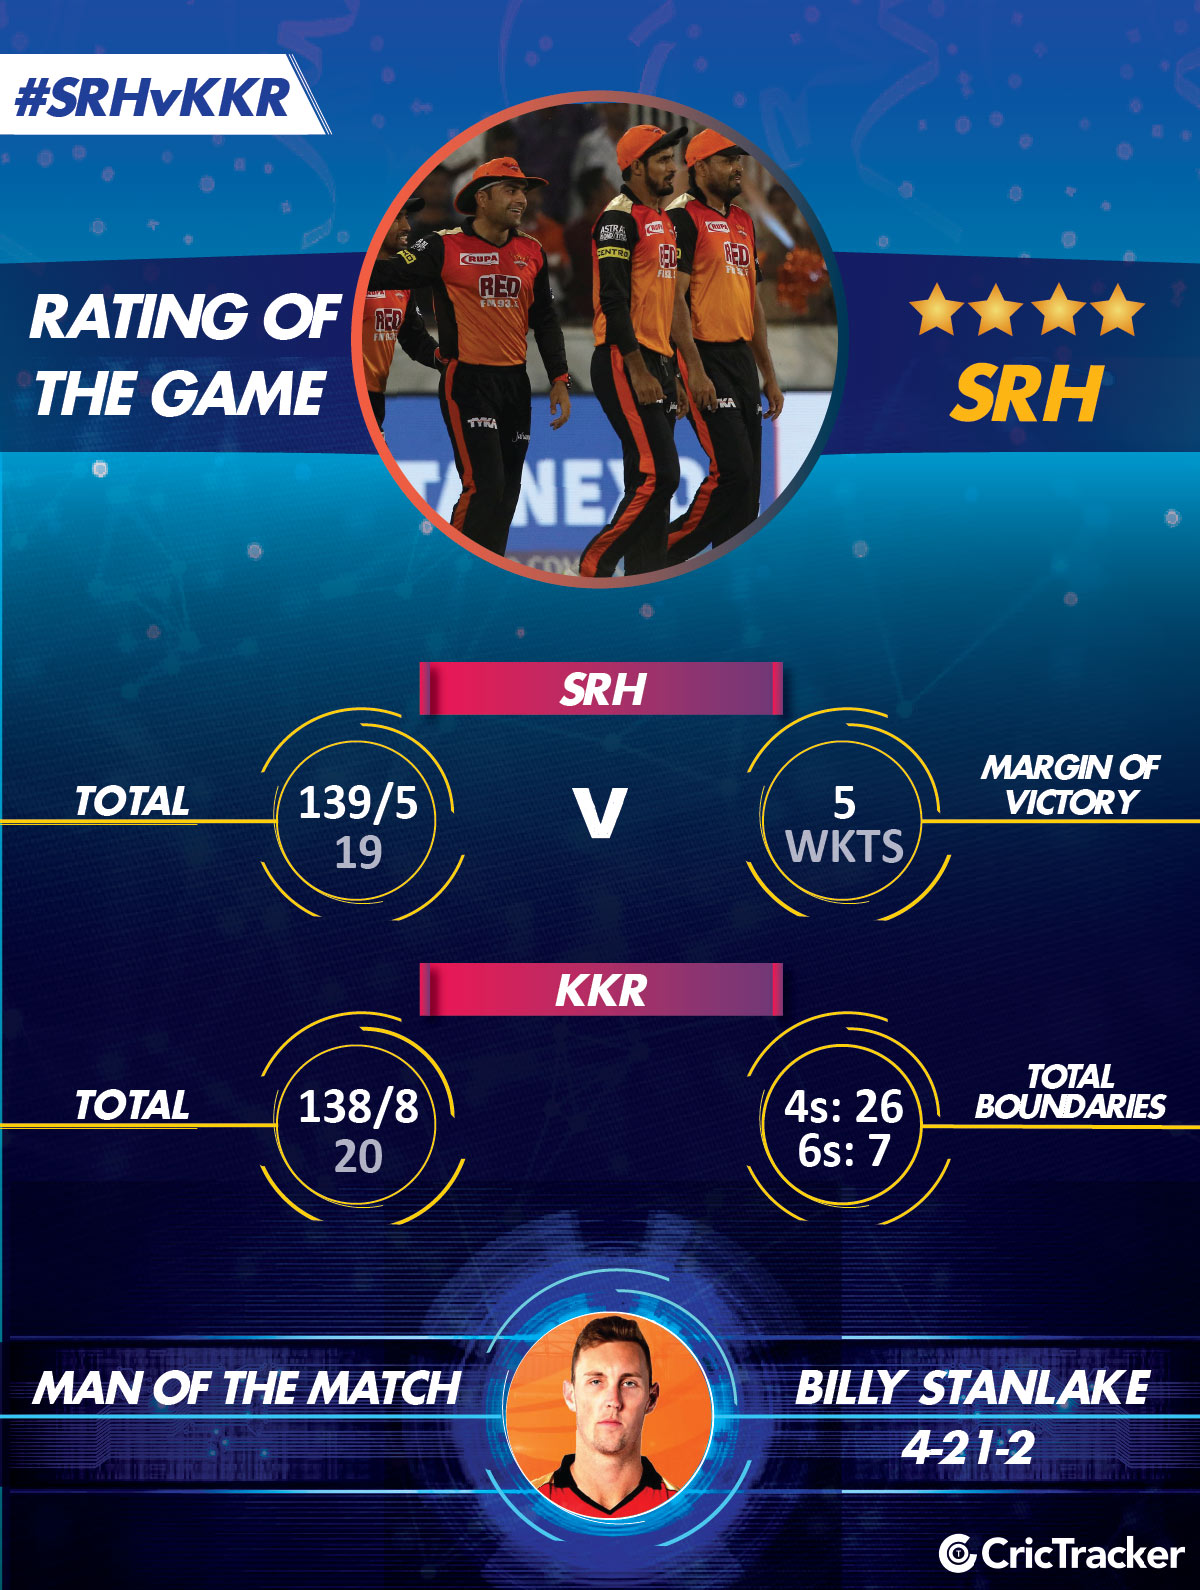 IPL2018-KKR-v-SRH-RatinG